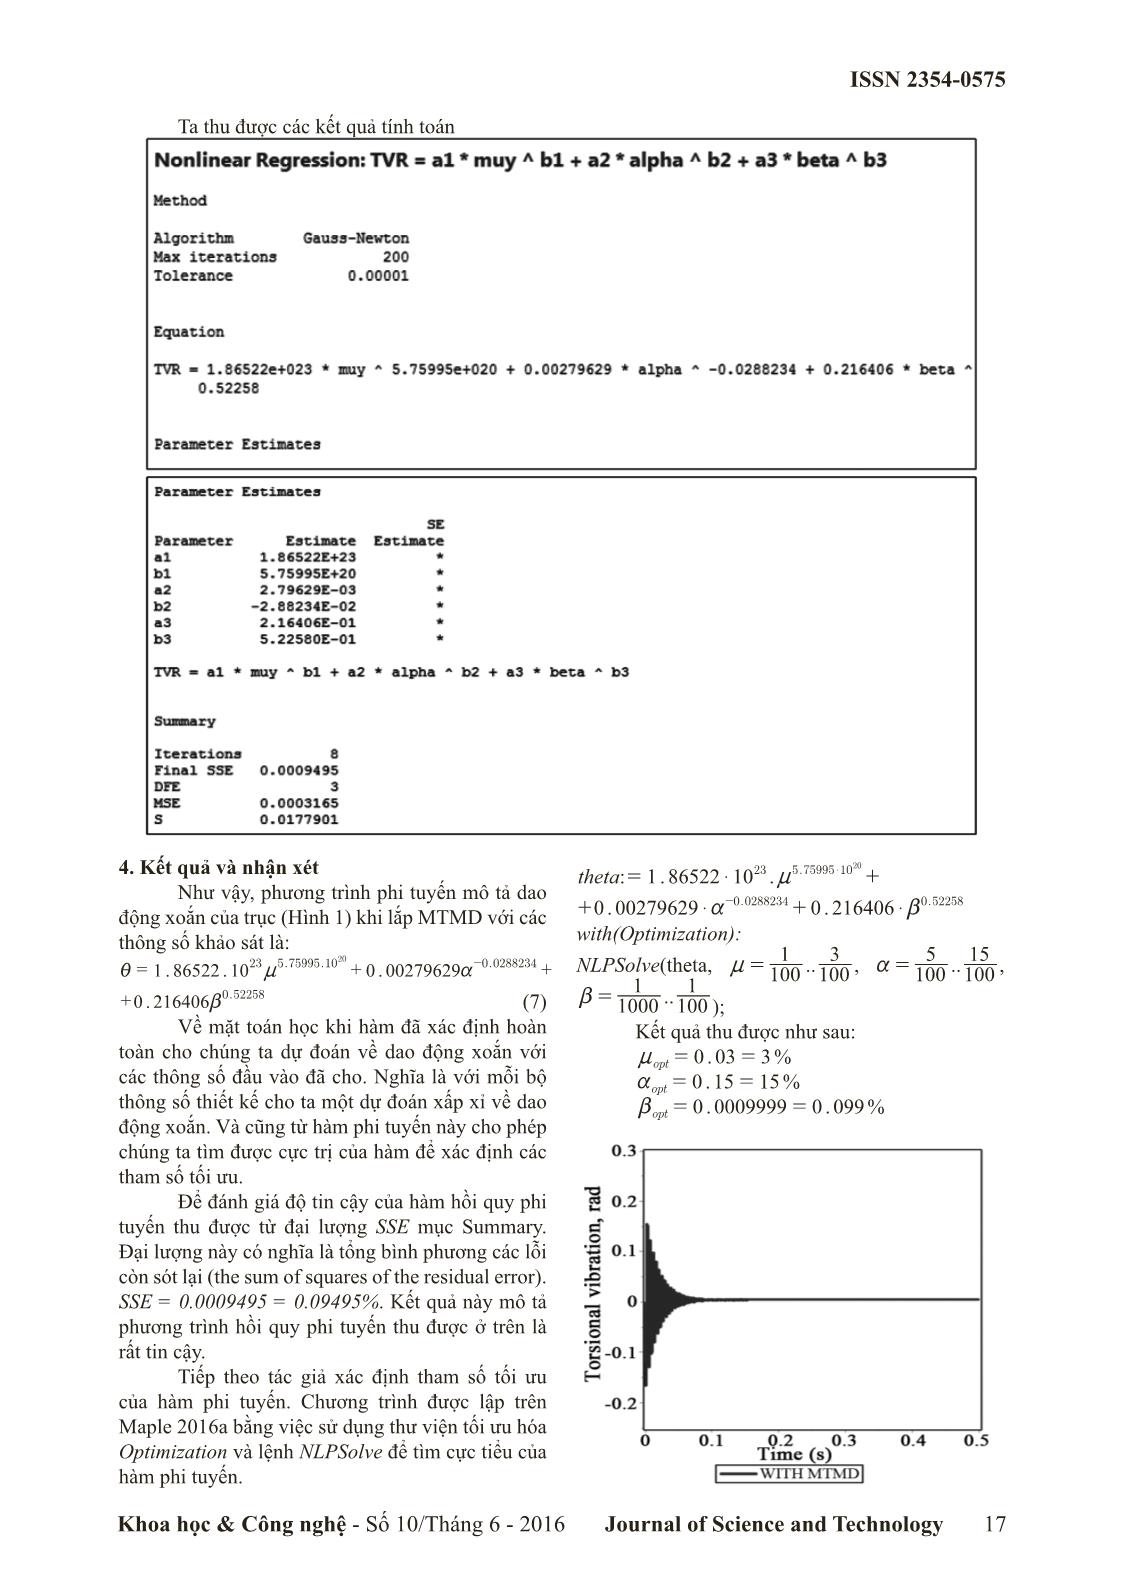 Tối ưu hóa thiết kế bộ MTMD giảm dao động xoắn cho trục ứng dụng thuật toán hồi quy phi tuyến Gauss-Newton trang 4